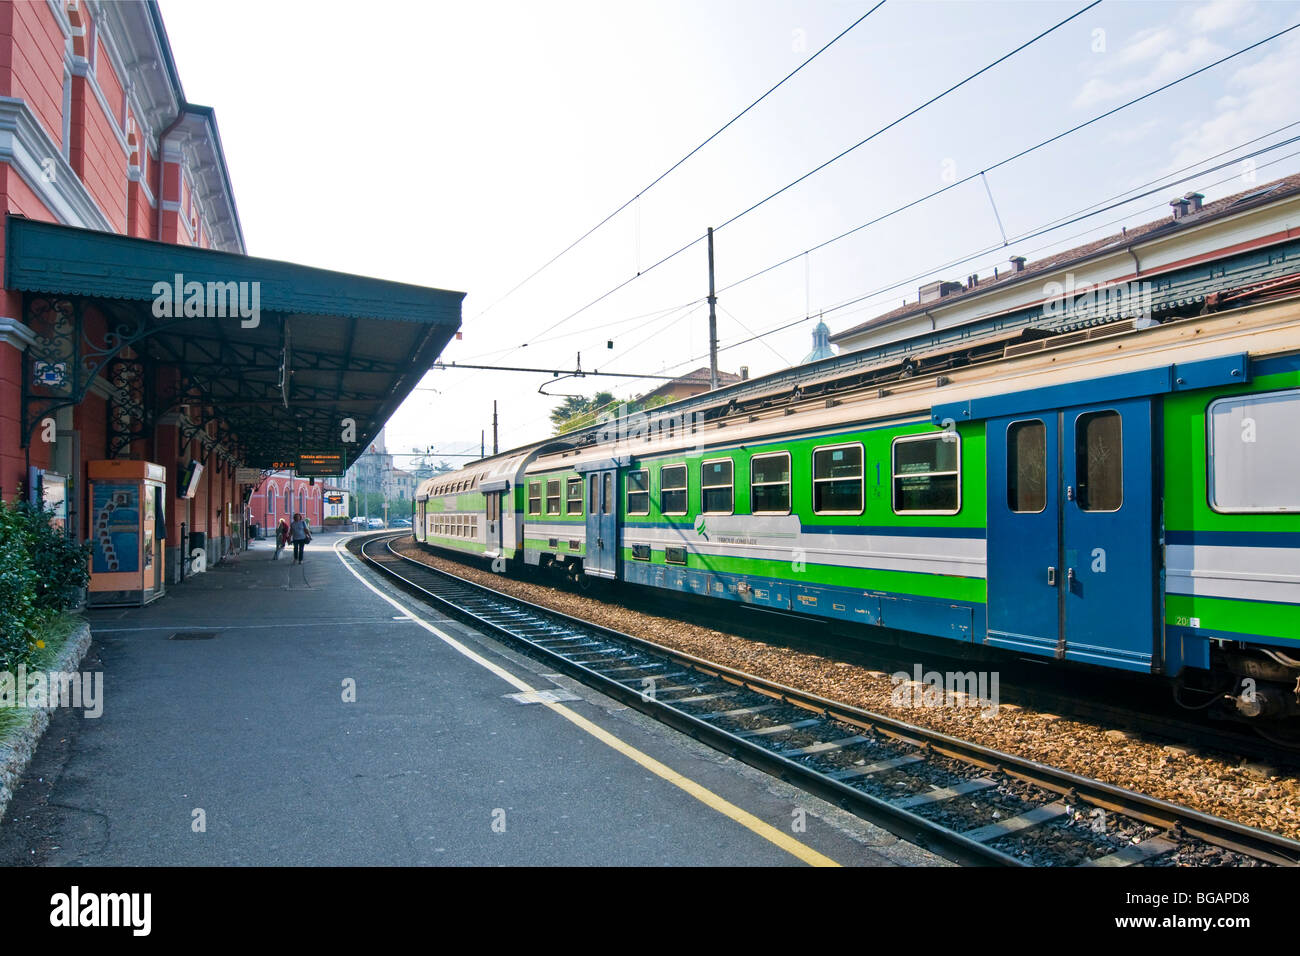 Stazione ferroviaria nord, Ferrovie Nord, Como, Italia Foto Stock